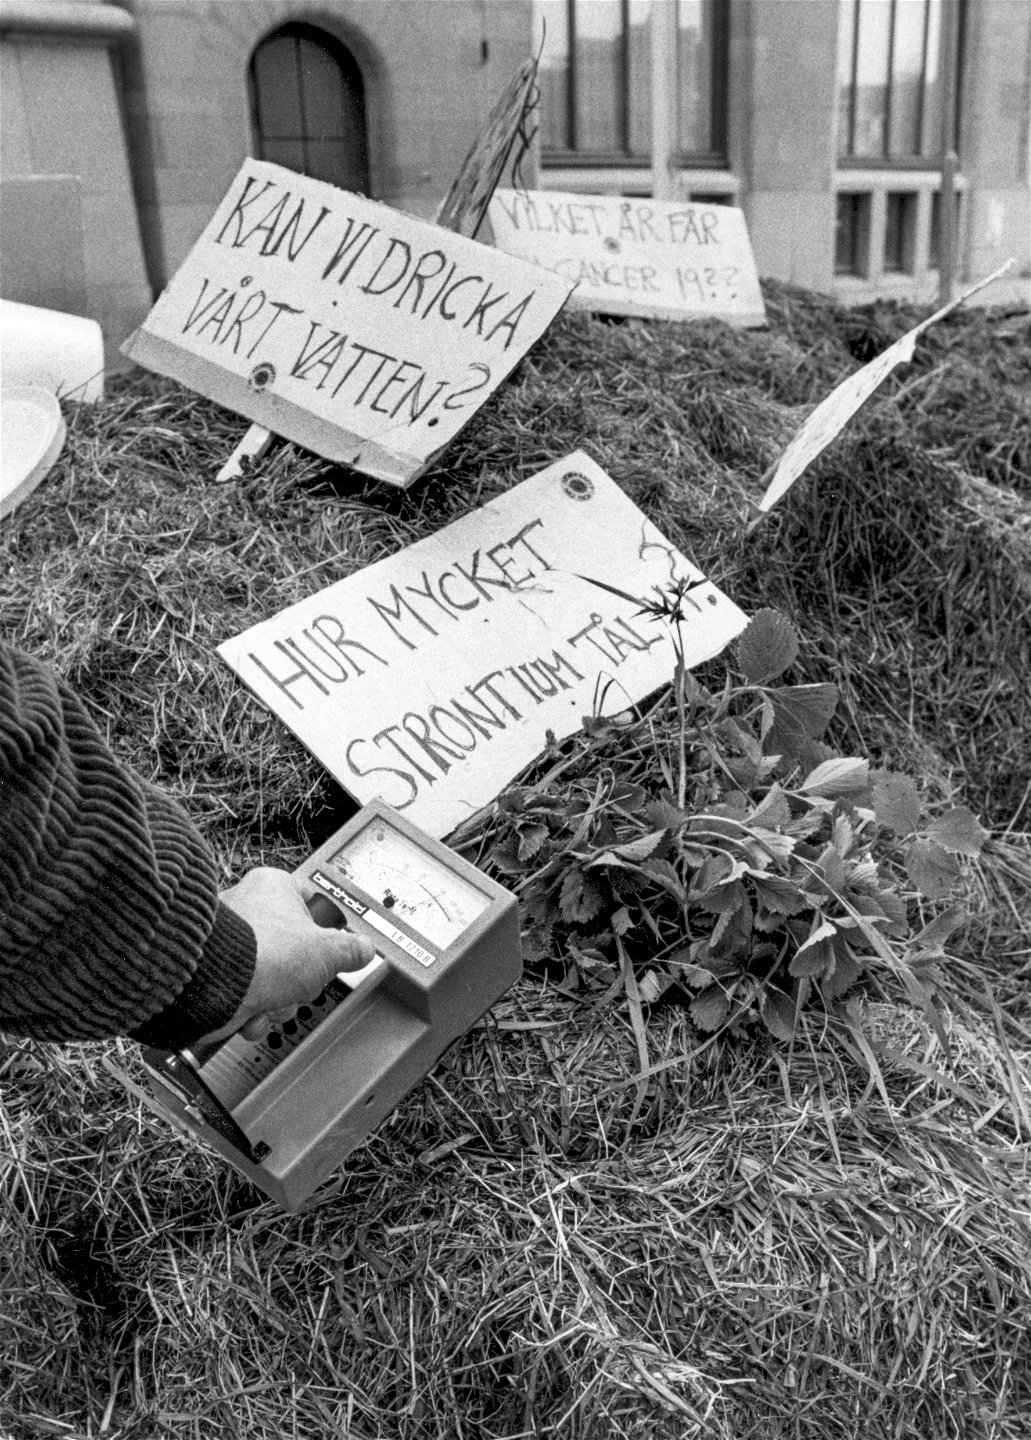 Den radioaktiva strålningen i ett lass nyskördat gräs mäts med en geigermätare efter att lantbrukare från Ådalen tippat av gräset, som innehåller höga värden av cesium, utanför Rosenbad i Stockholm den 5 juni 1986. ”Vid någon tidpunkt blev framtiden vår generations svar på Tjernobyl”, skriver Malcom Kyeyune.